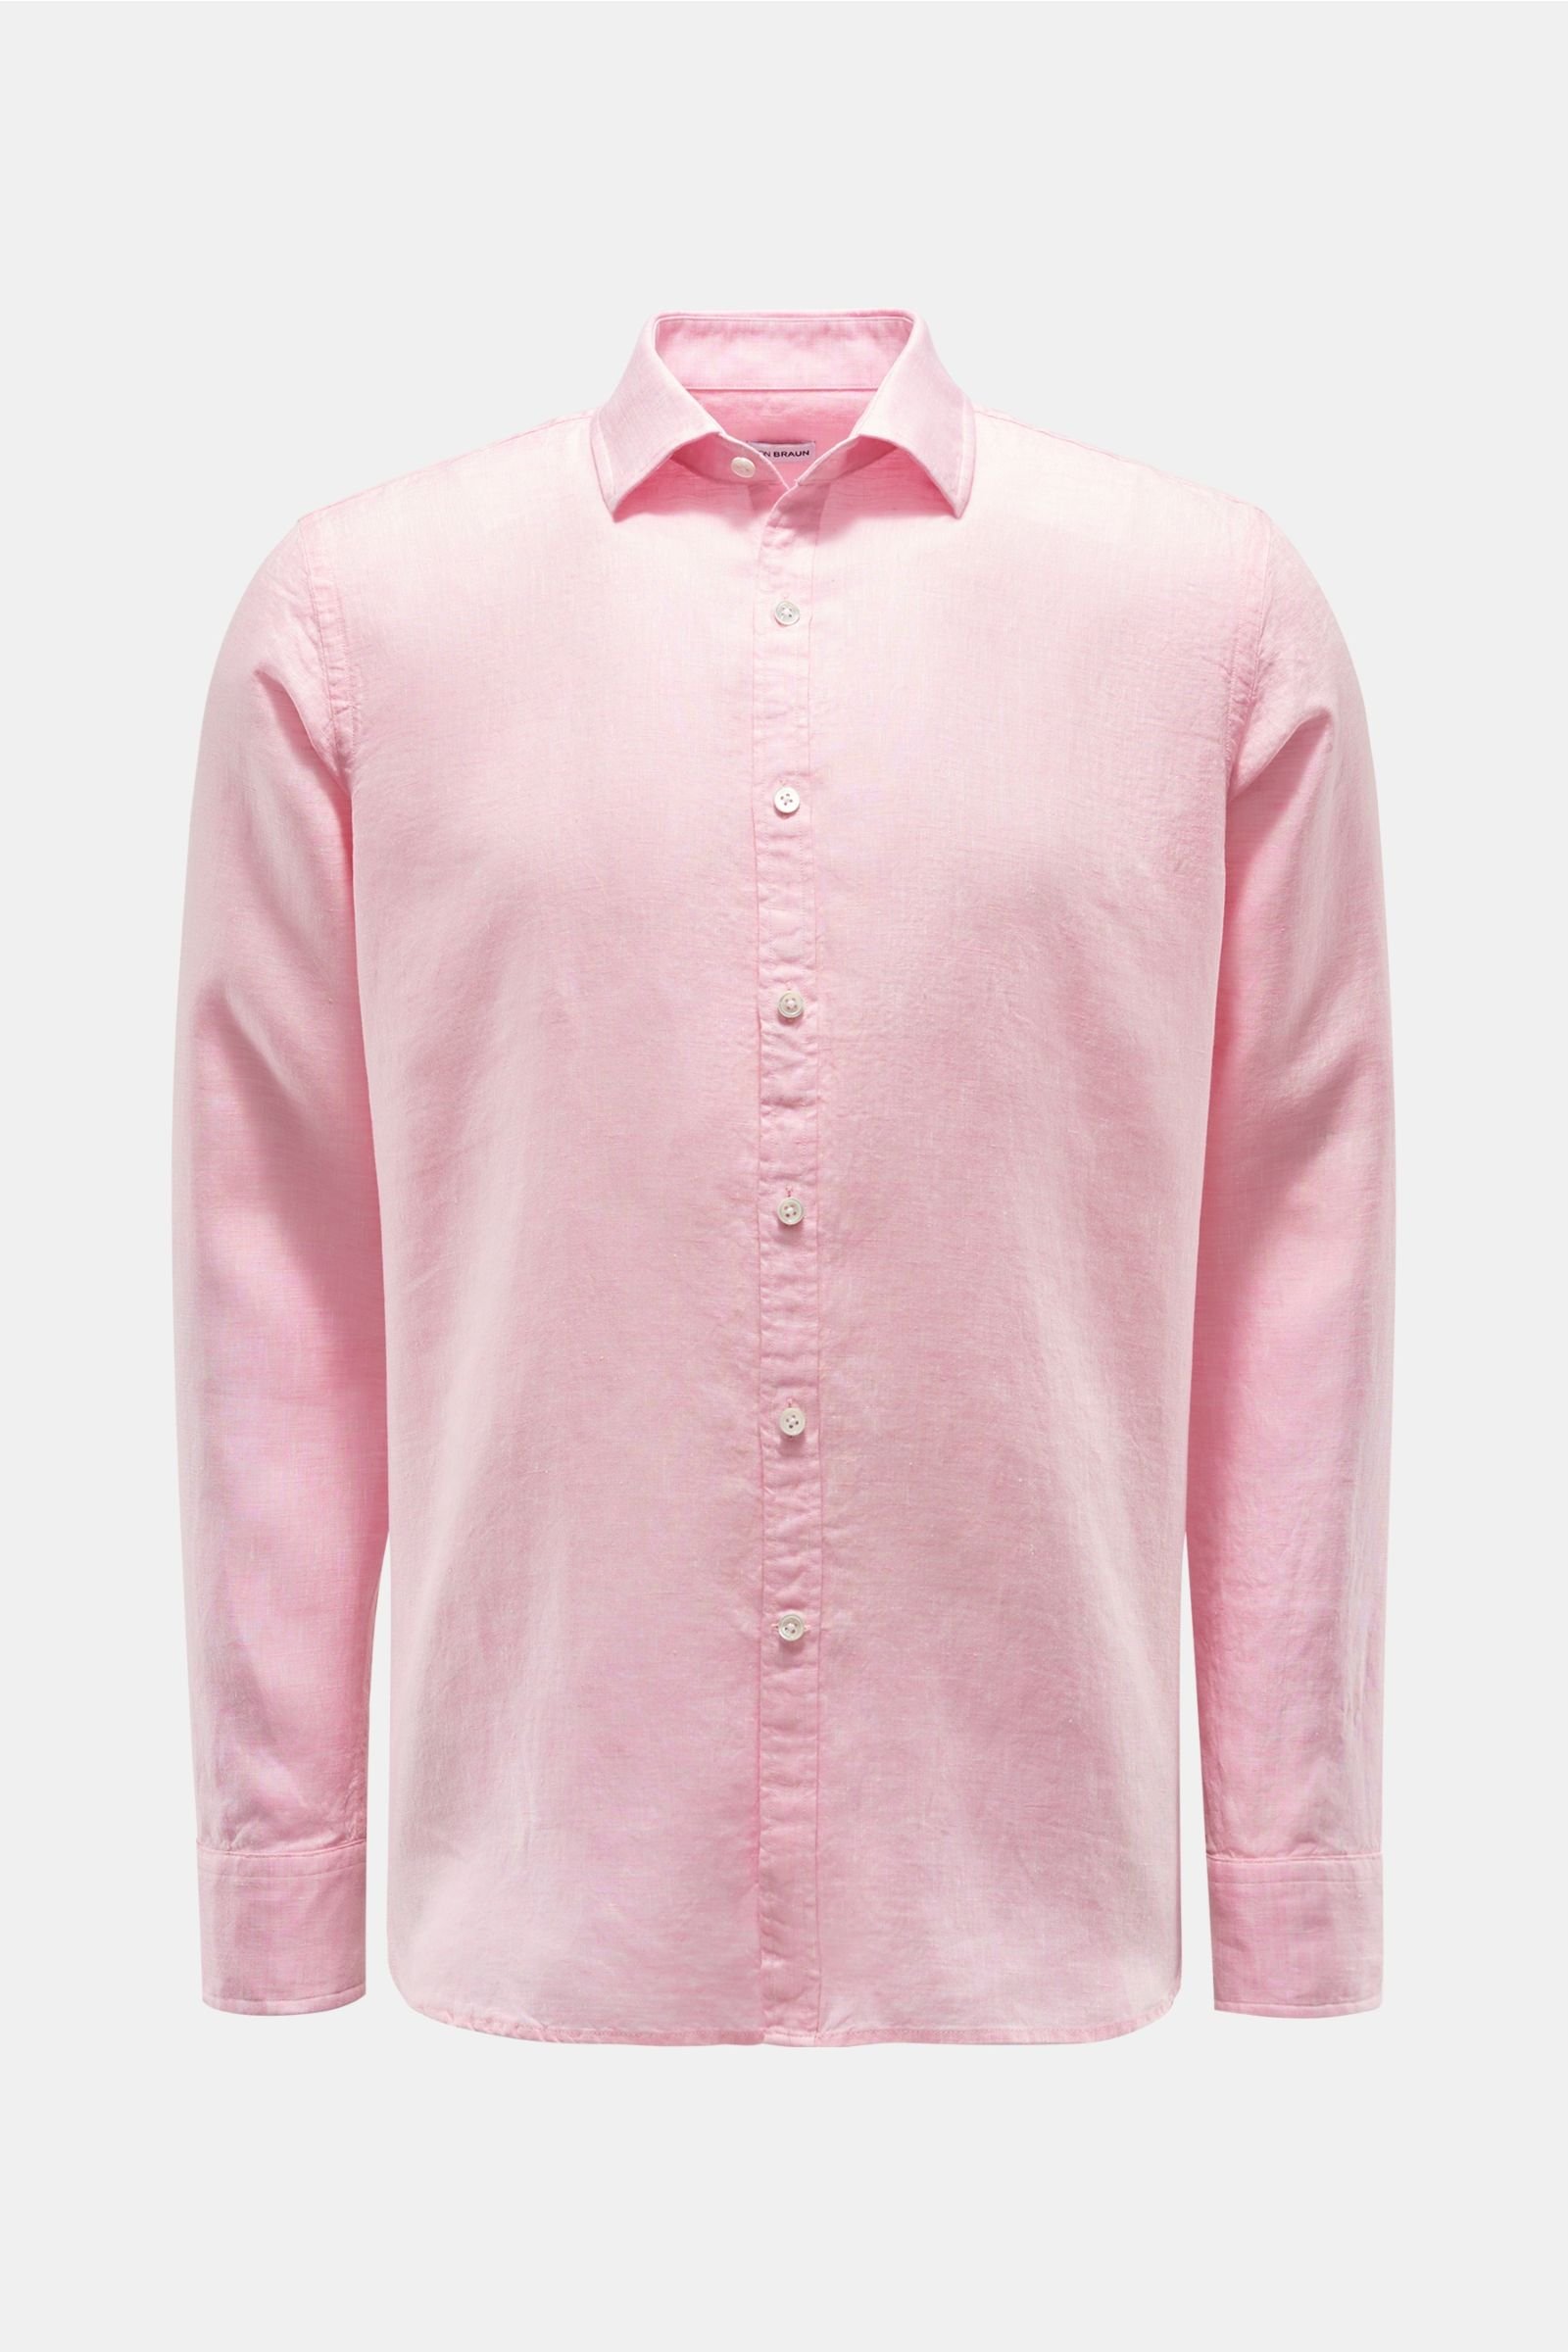 Linen shirt Kent collar rose